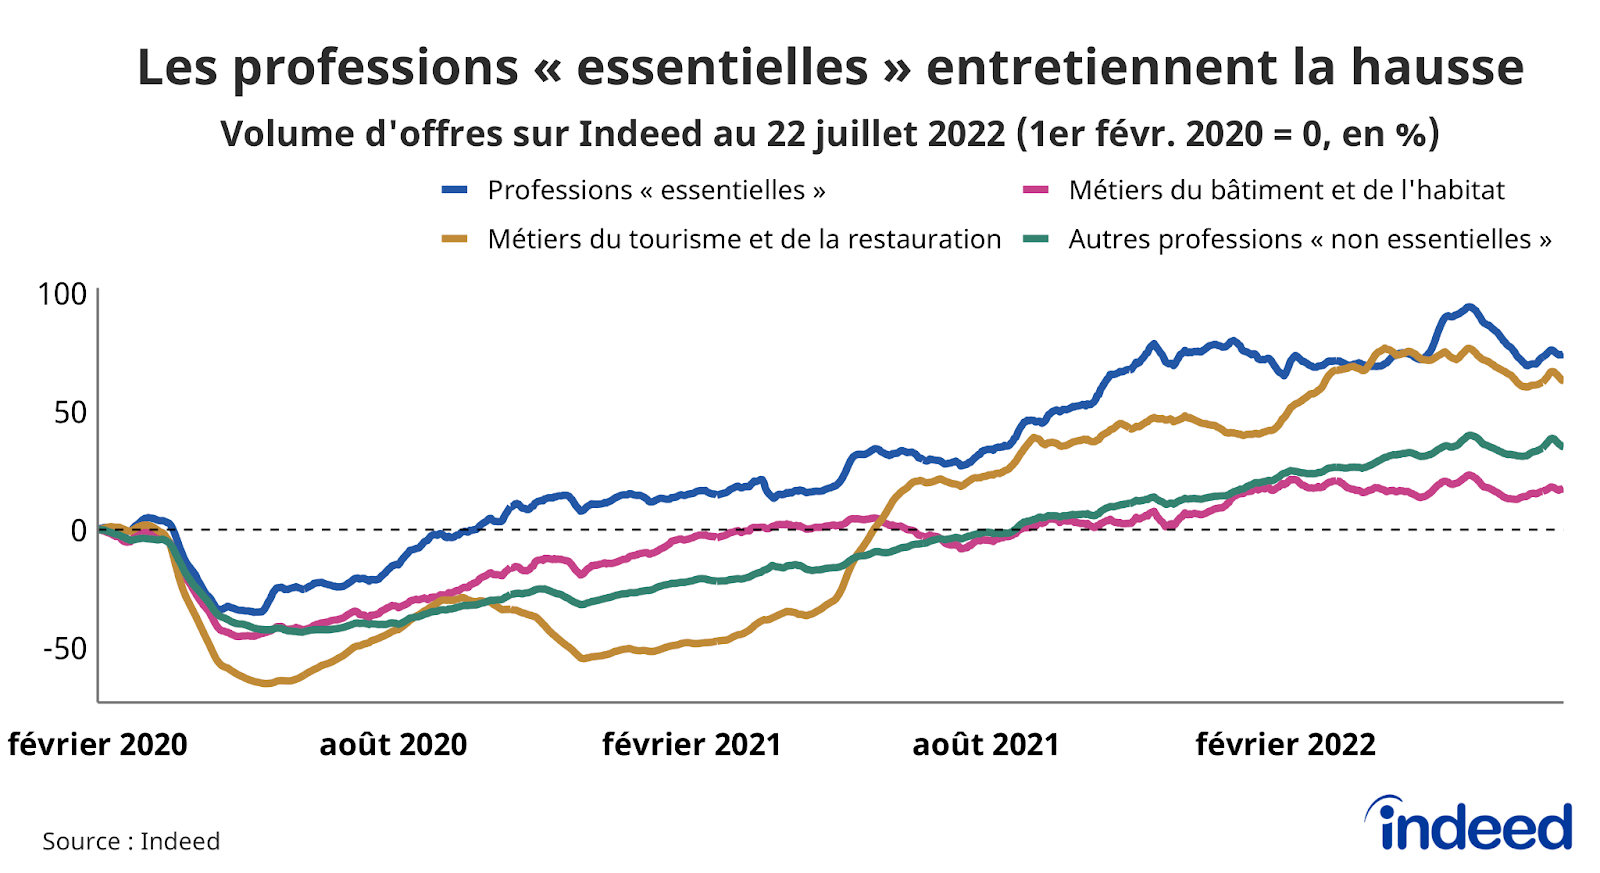 Le graphique en courbes illustre l’évolution, par rapport à la référence du 1er février 2020, du volume d’offres d’emploi (en abscisses) en fonction du temps (en ordonnées), jusqu’au 22 juillet 2022.